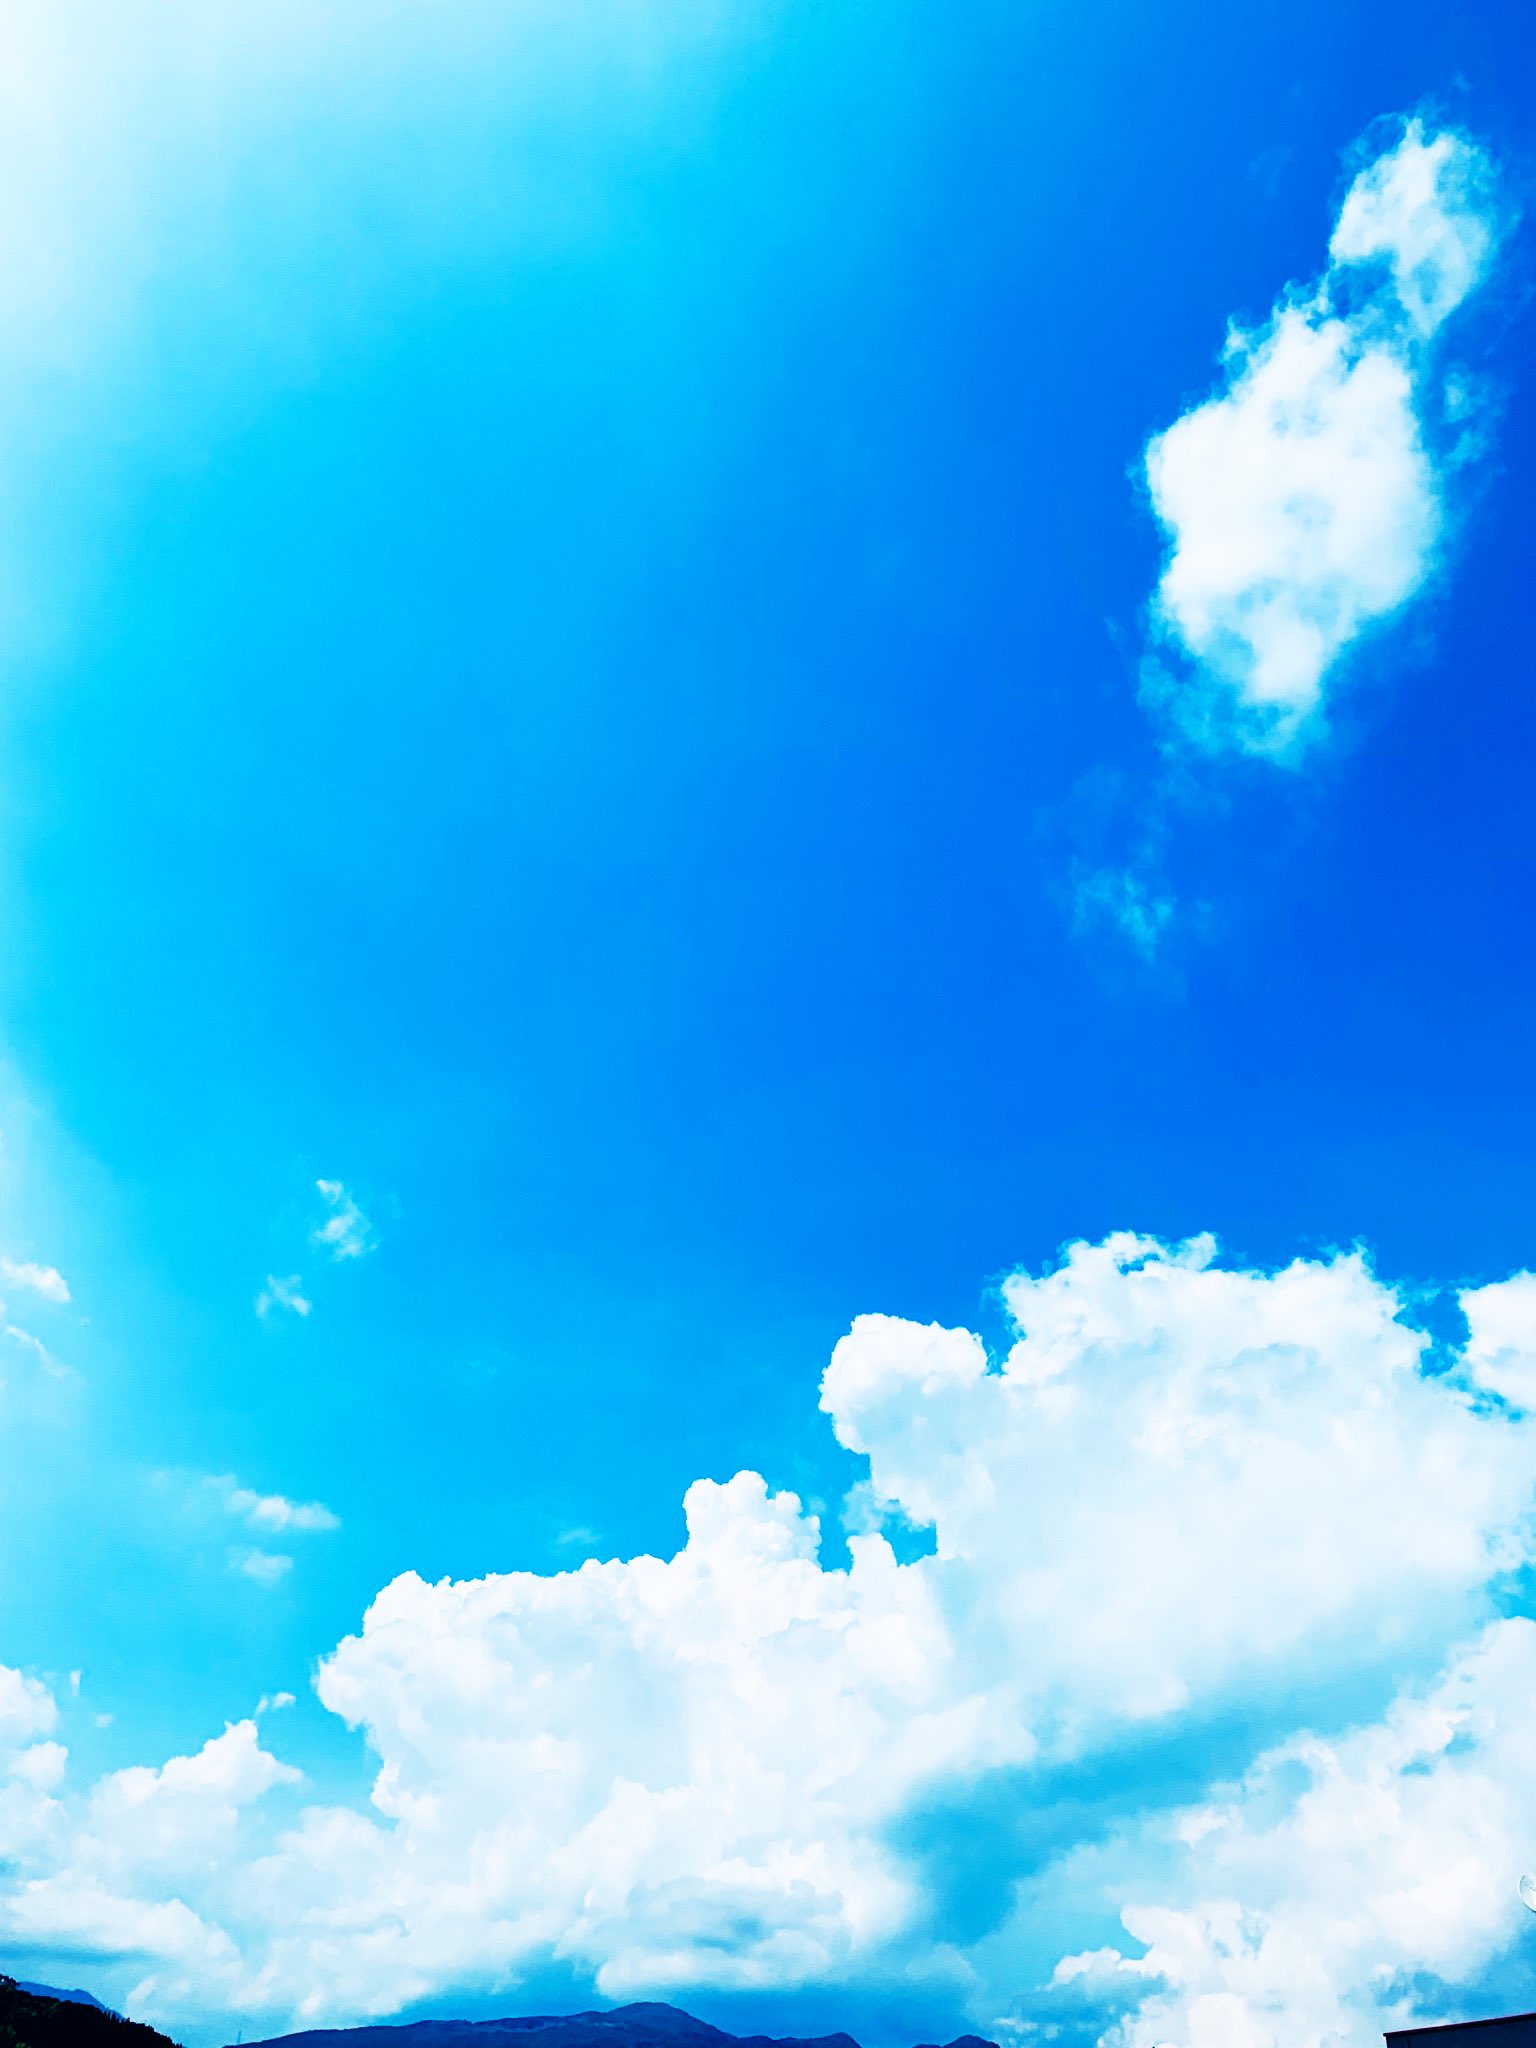 りお 空 青空綺麗やけどｱﾁｭｲ もう 暑いしか言葉出てけーへん 空 イマソラ 晴れ 青空 雲 綺麗 でも 暑い Sky Sunny Bluesky Cloud Beautiful Very Hot T Co Xleq1gjed1 Twitter